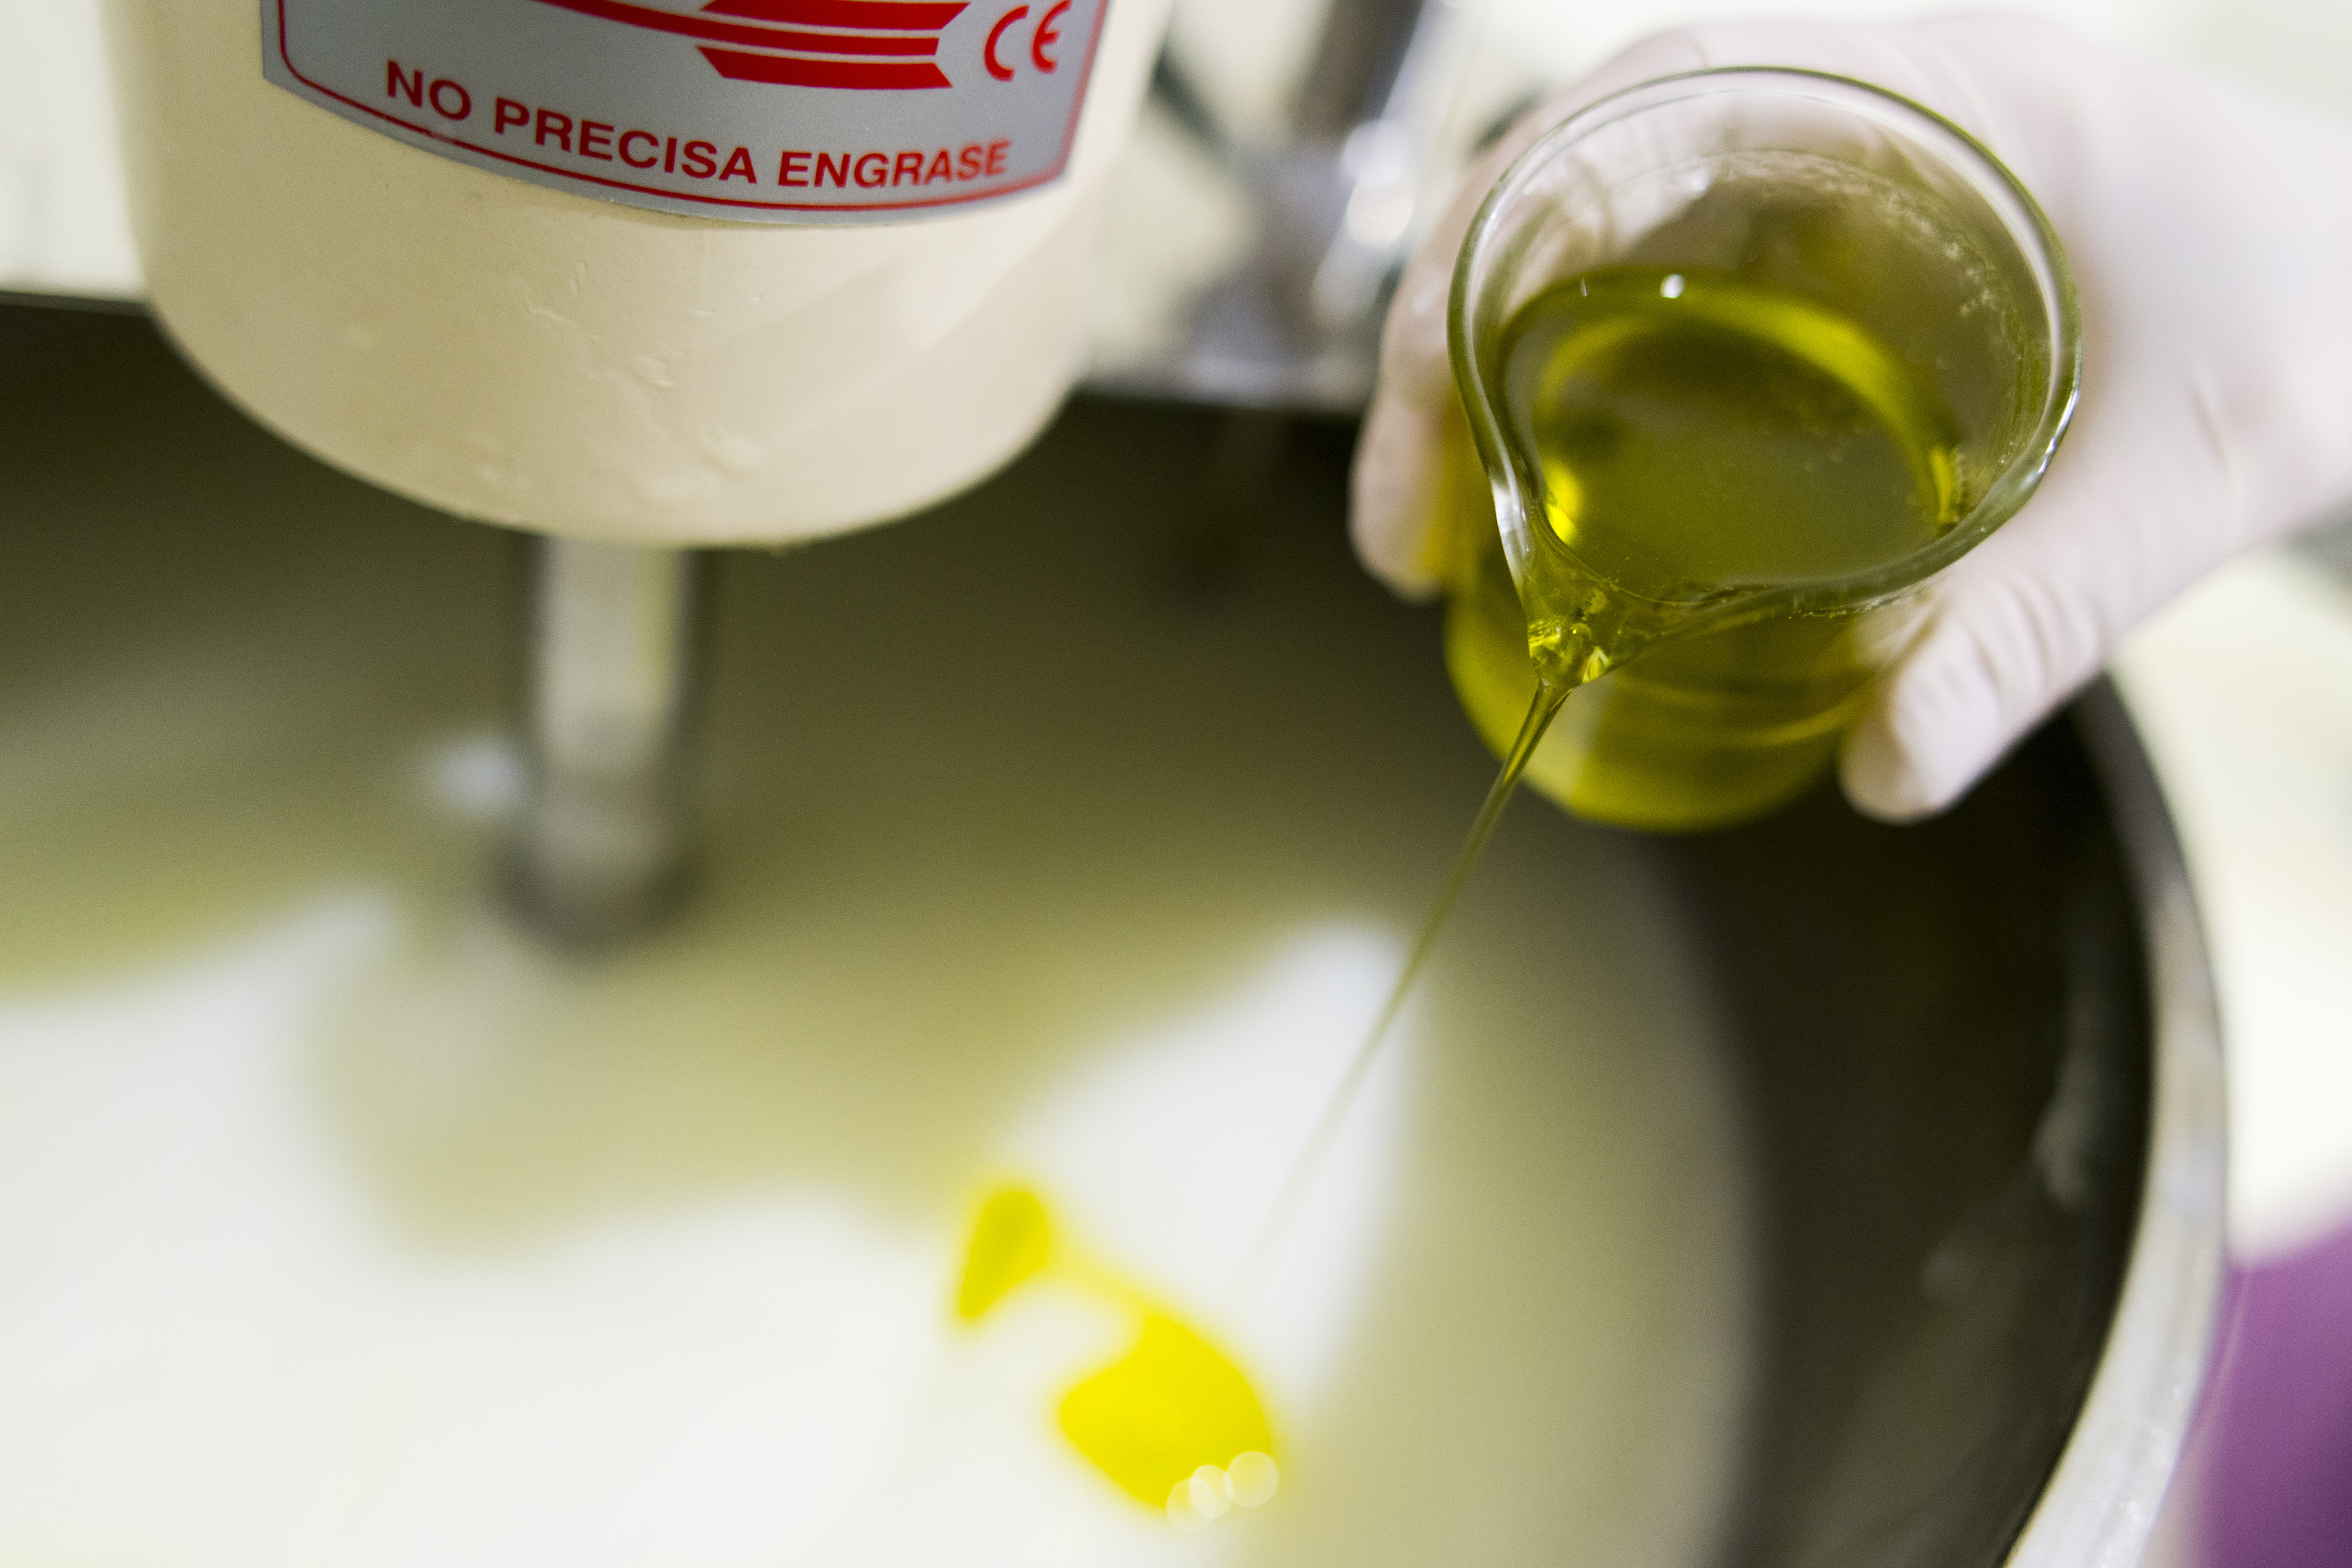 Científicos estudian la eficacia de cosméticos naturales fabricados con aceite de oliva sobre la piel de personas con ostomía digestiva